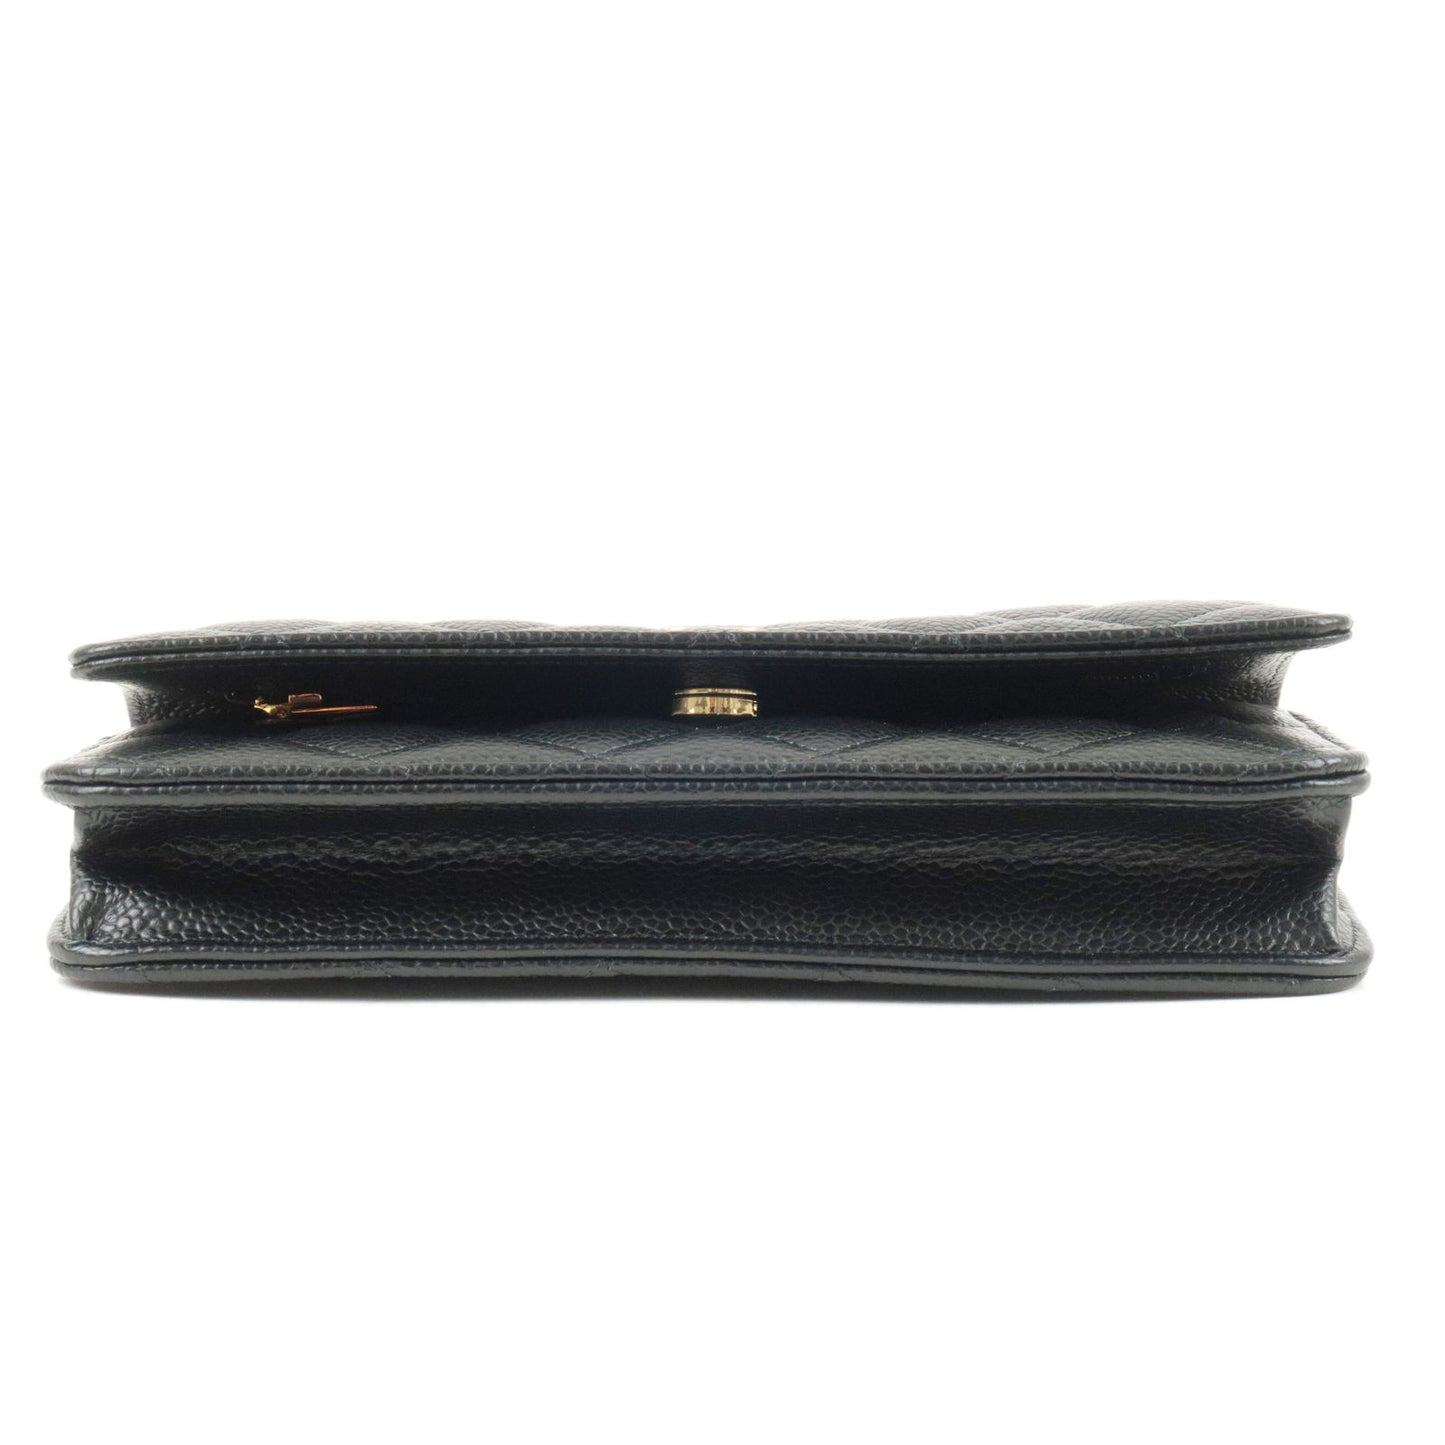 CHANEL Matelasse Caviar Skin Chain Wallet WOC Black Gold HDW AP0250